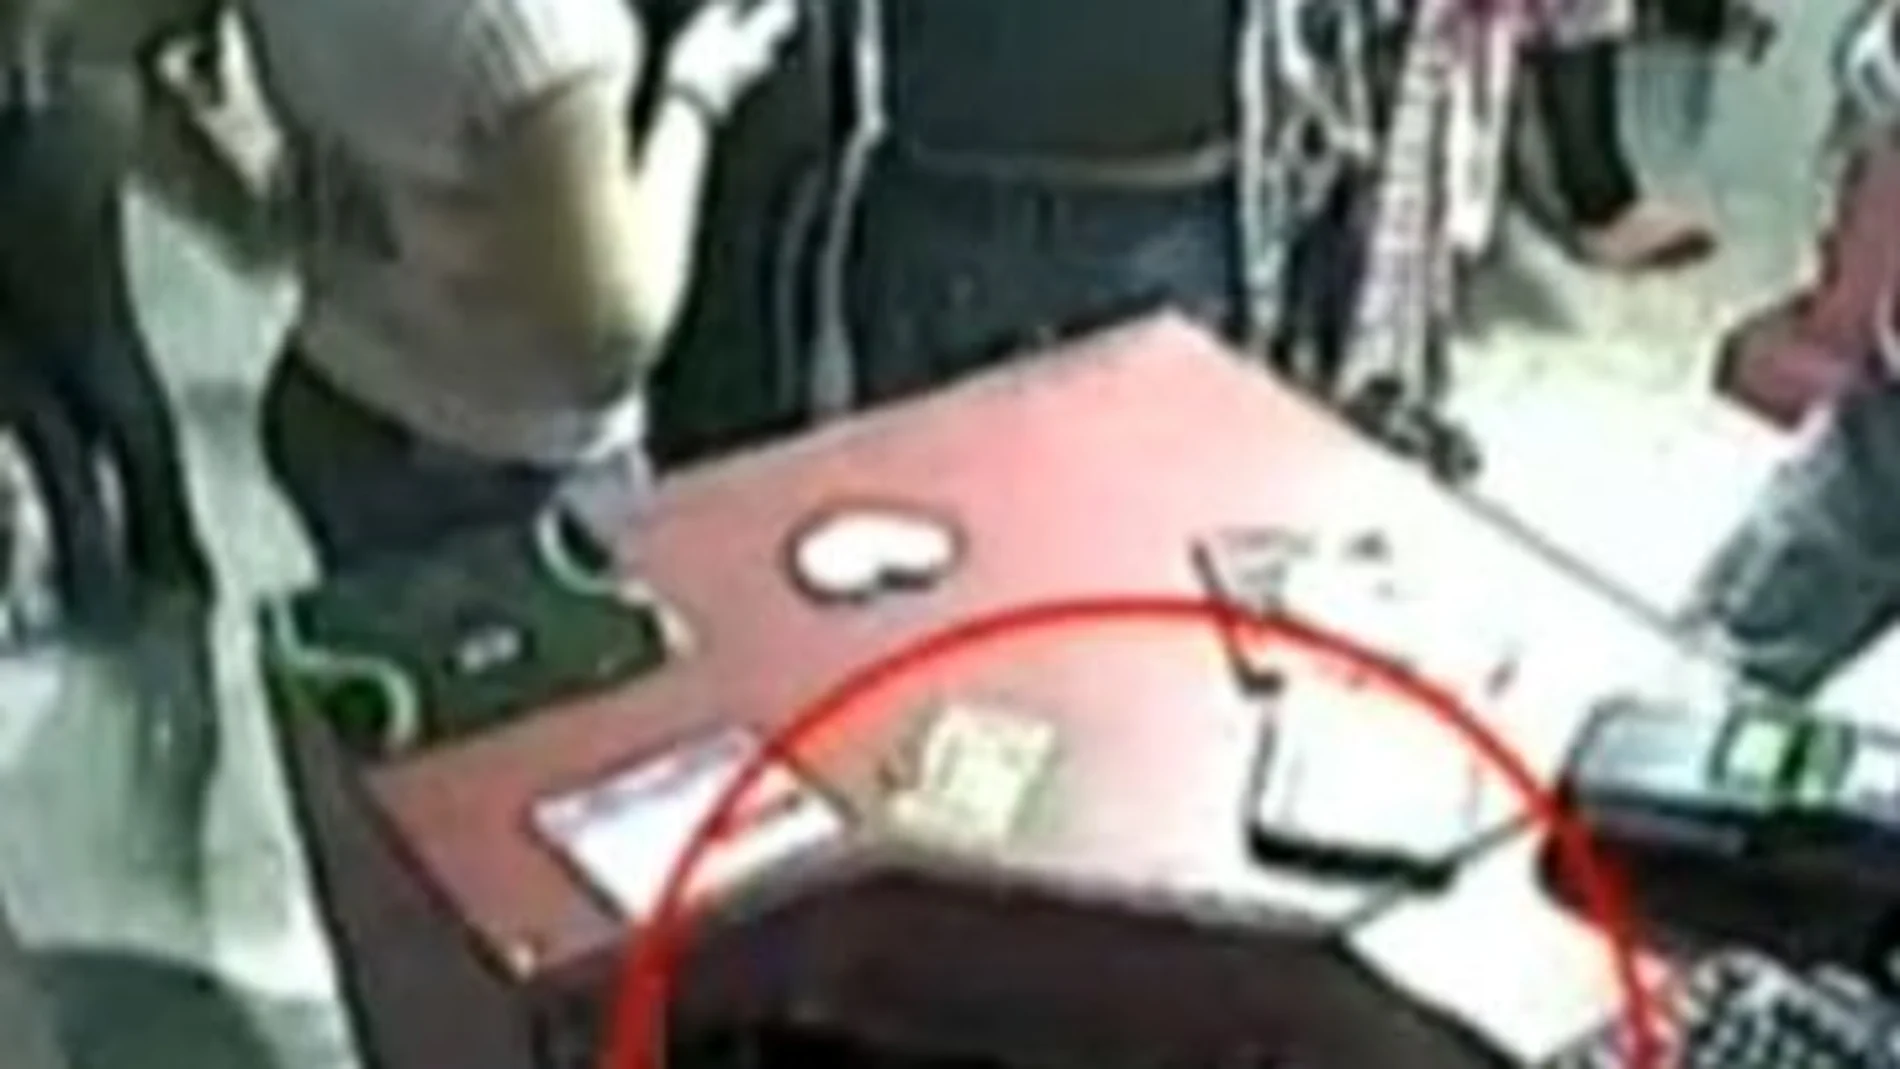 La mano de la niña abriendo la caja, en una imagen de las cámaras de seguridad